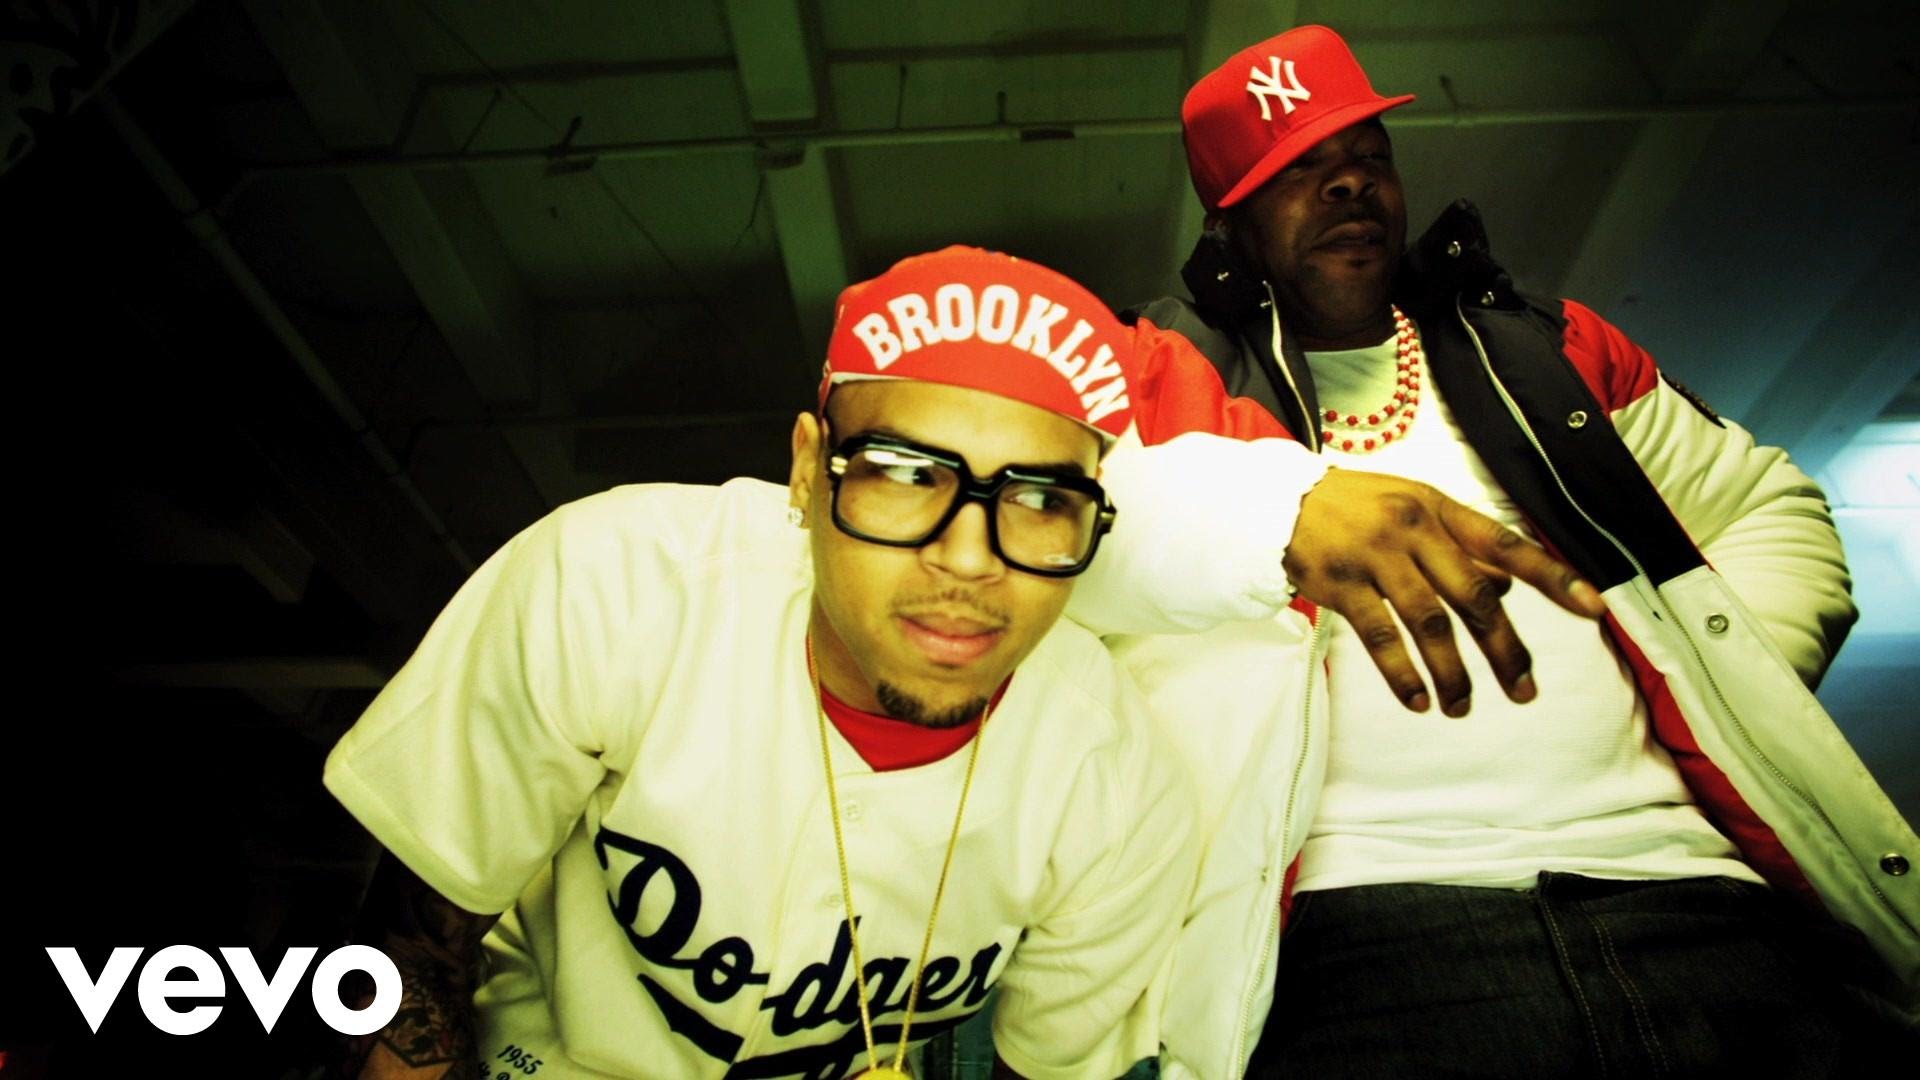 Chris Brown - Look At Me Now ft. Lil Wayne, Busta Rhymes - YouTube